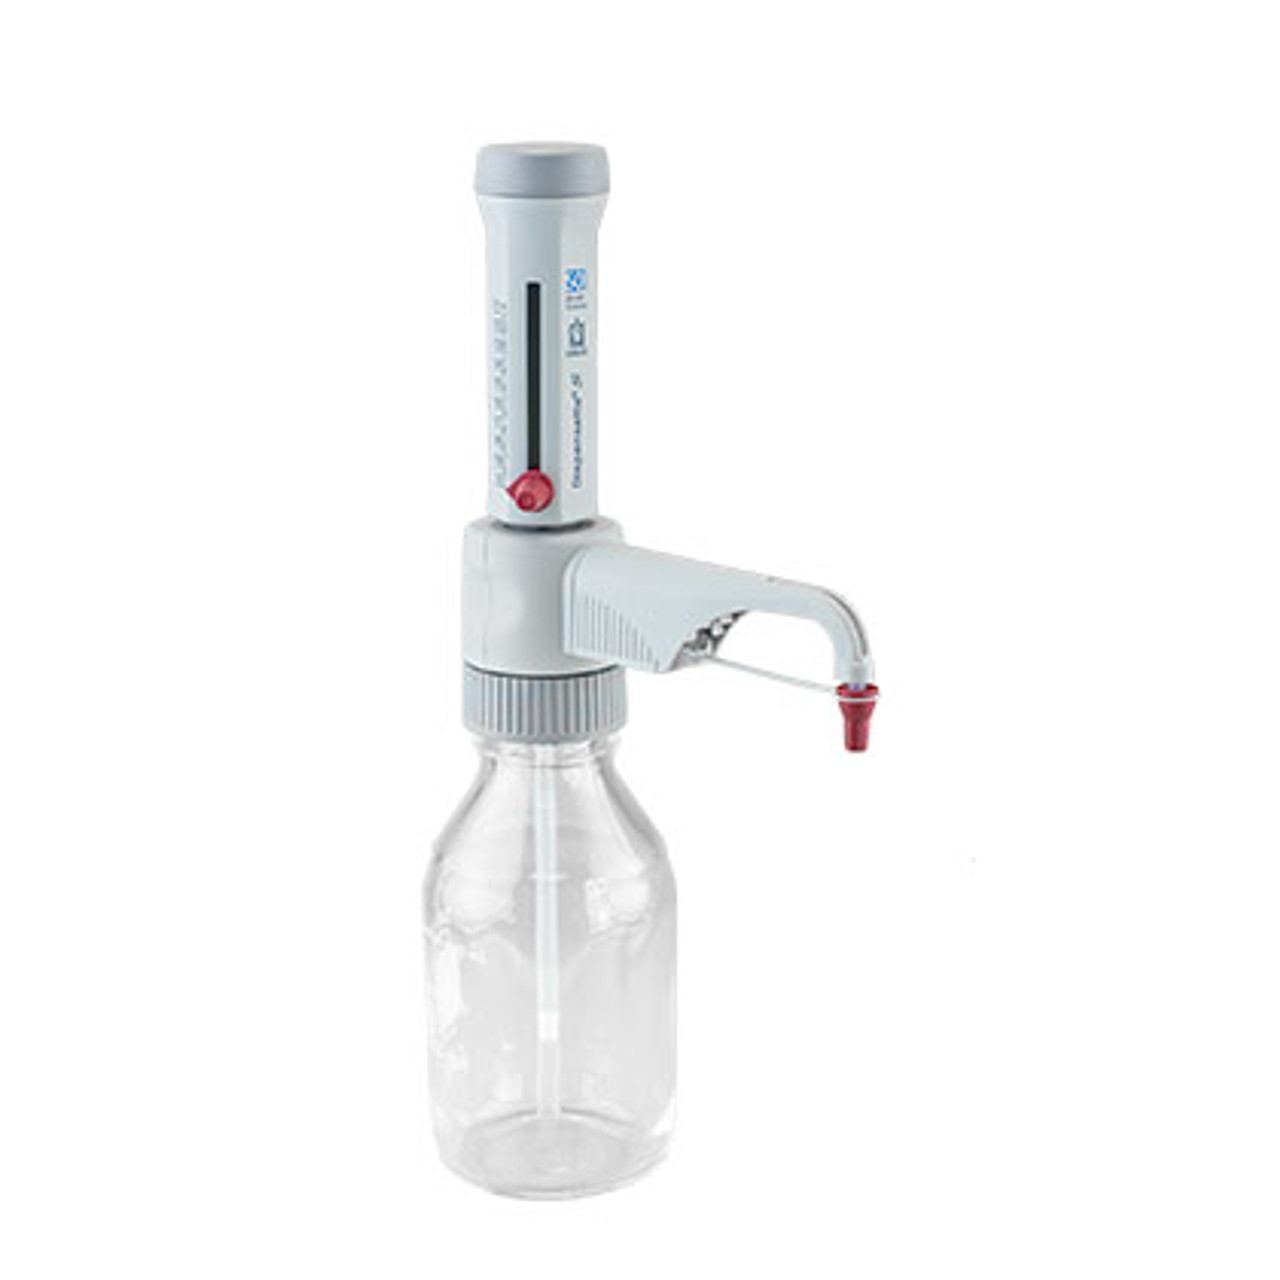 Dispensette® S bottletop dispensers build on the 50 year history of BRAND® dispensing expertise